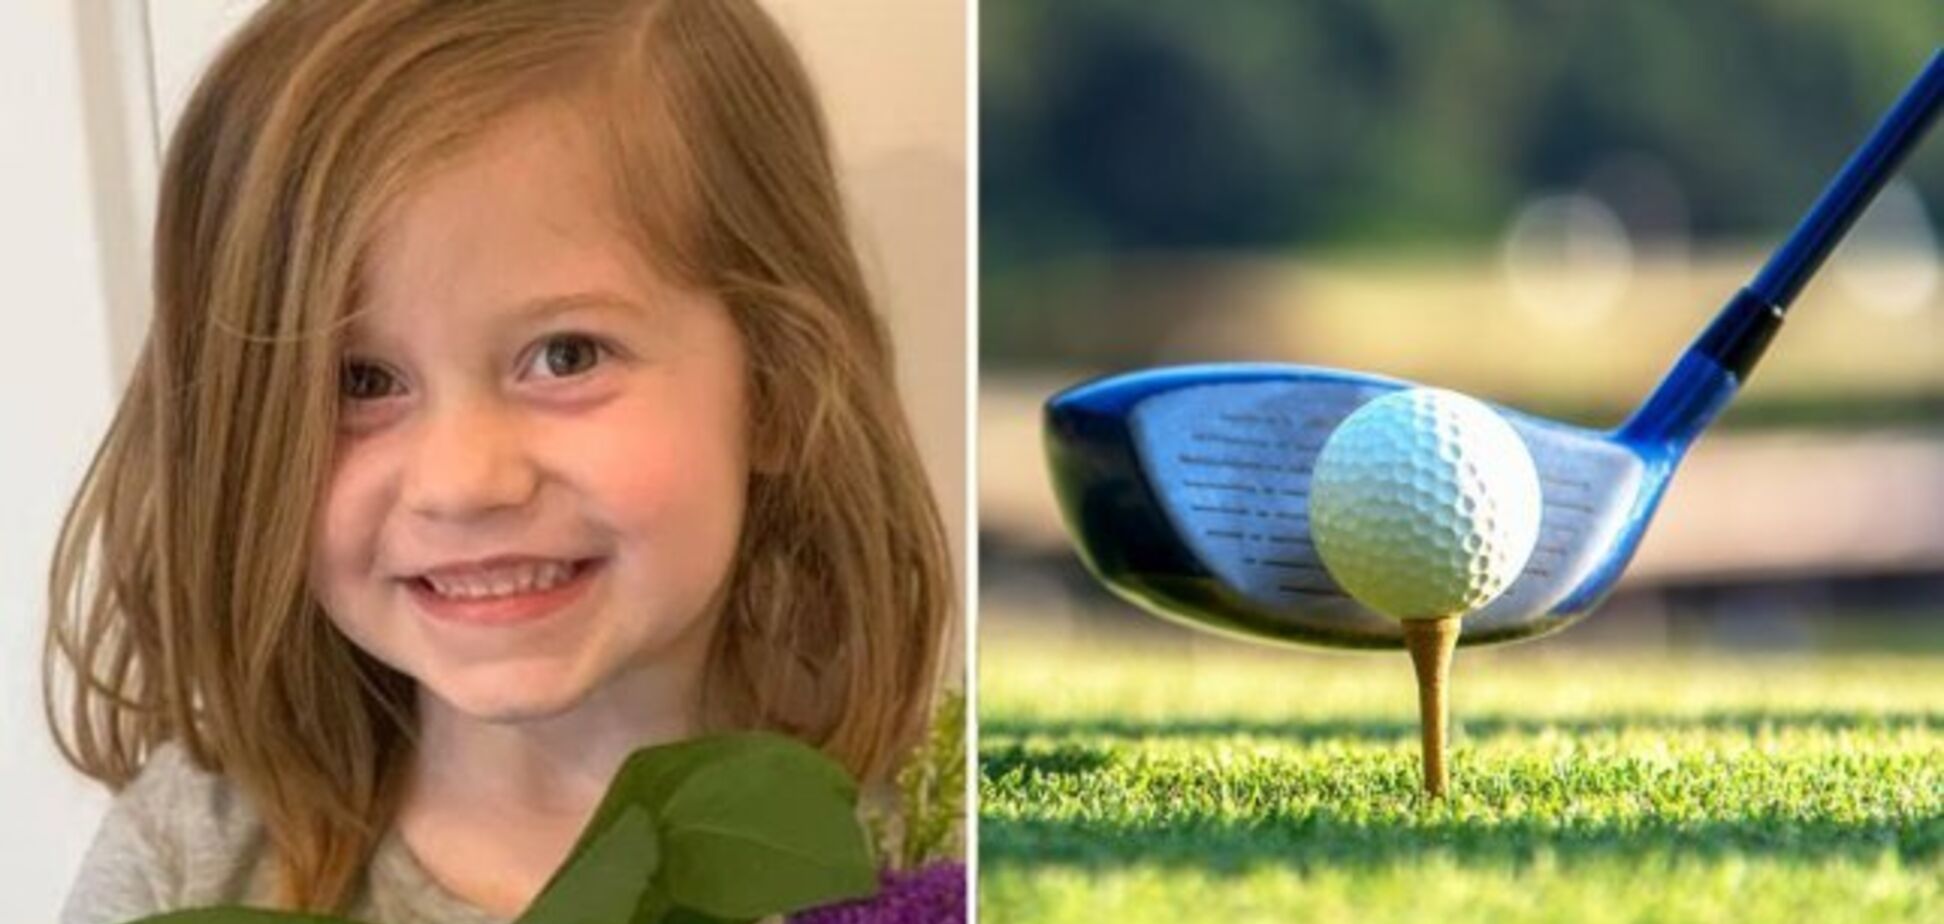 Батько під час гри в гольф випадково вбив 6-річну доньку